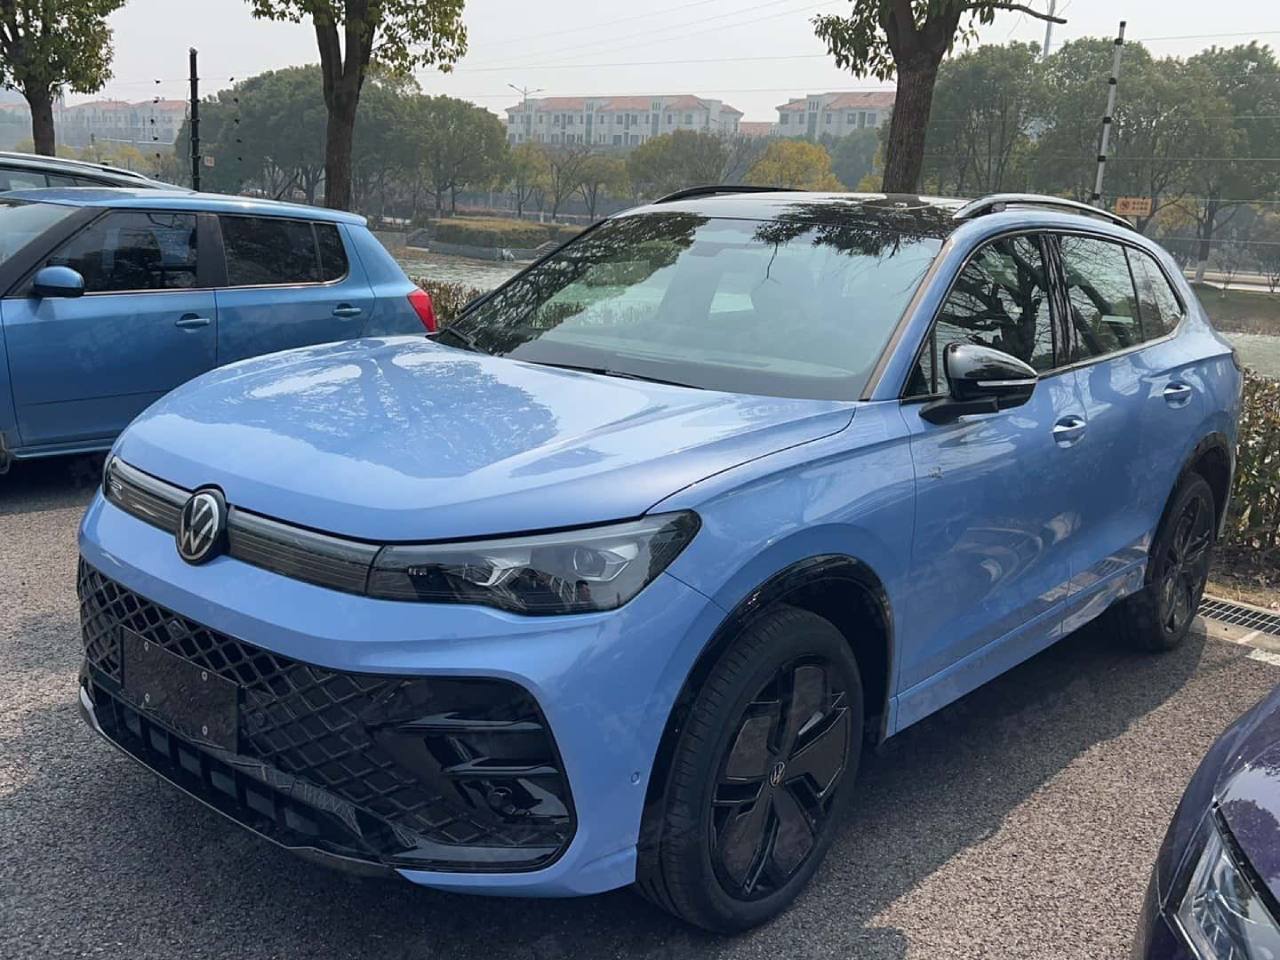 ¡Atrapó!  El nuevo Volkswagen Tiguan de China ha sido visto sin camuflaje antes de su debut mundial